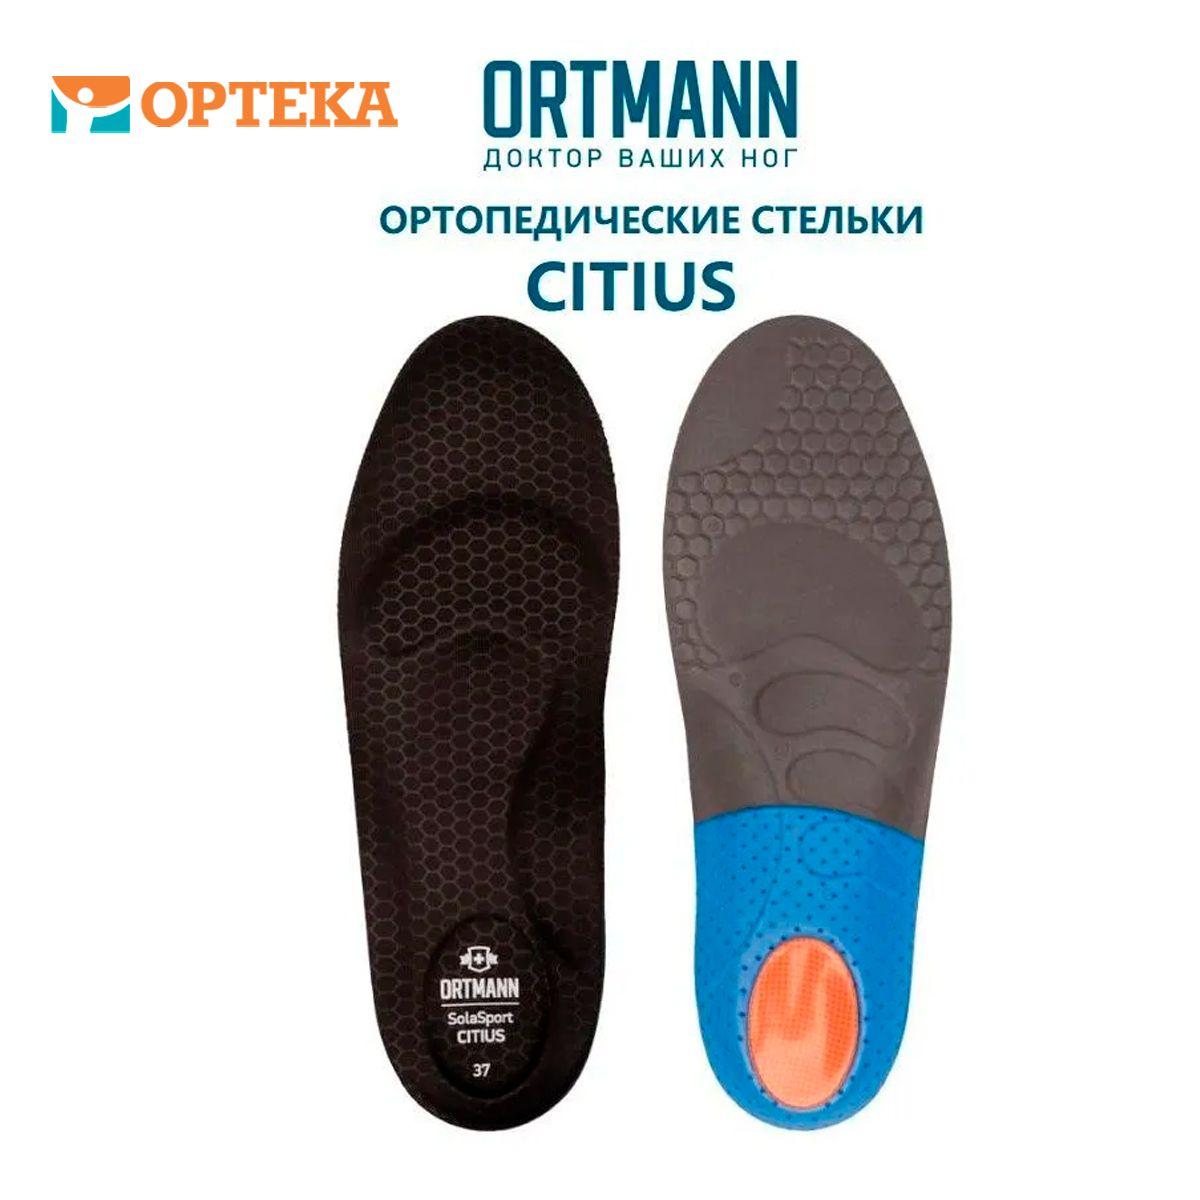 Ortmann | Ортопедические стельки для защиты от ударных нагрузок во время занятий спортом при комбинированном плоскостопии ORTMANN CITIUS арт. AZ0450